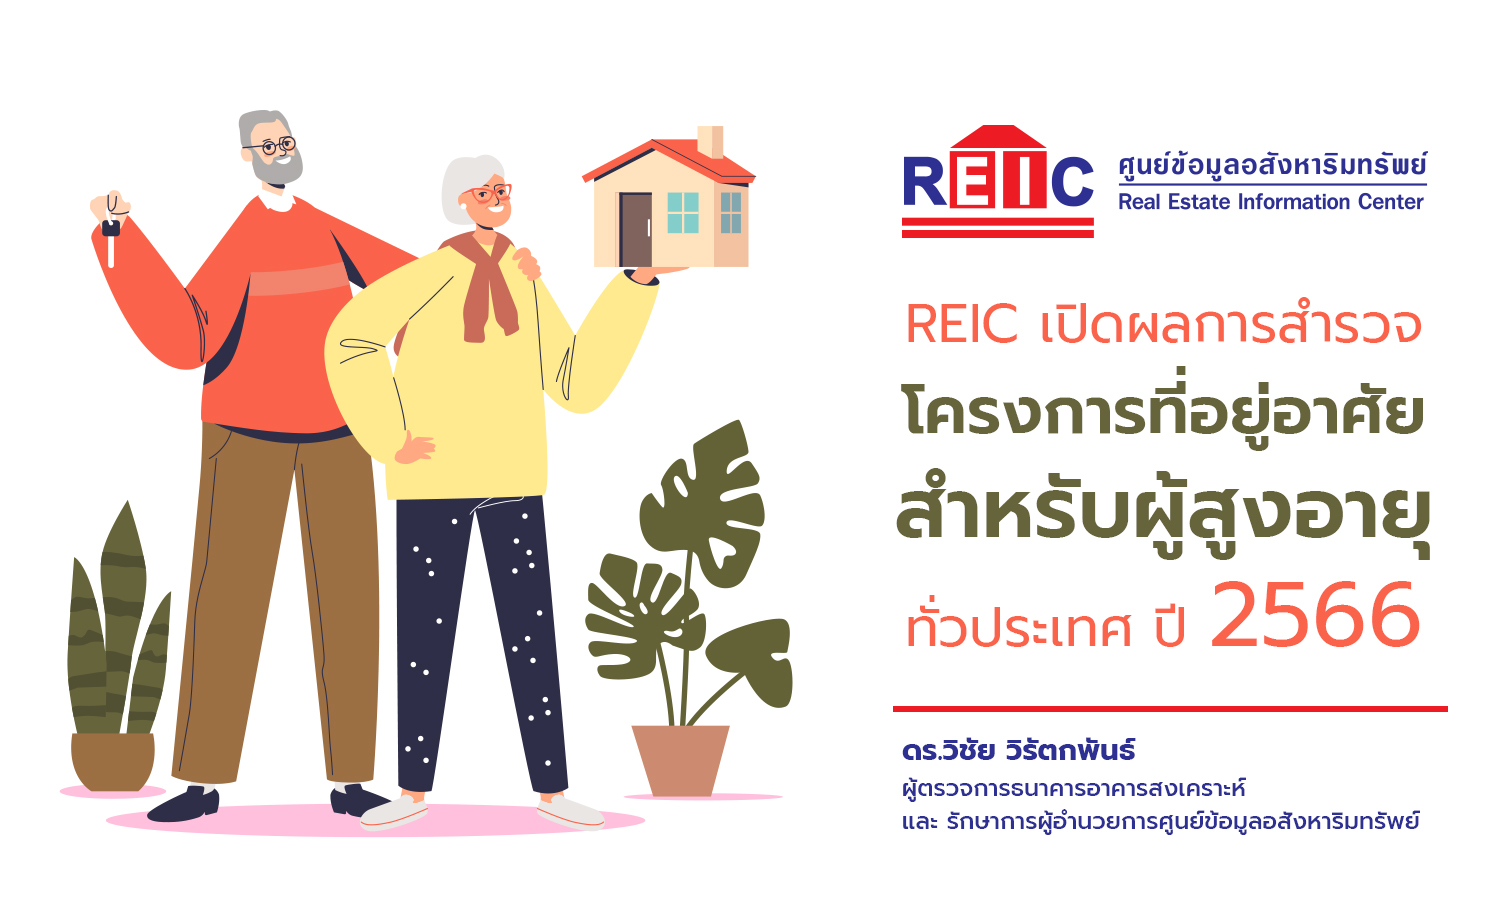 REIC เปิดผลการสำรวจโครงการที่อยู่อาศัยสำหรับผู้สูงอายุ ทั่วประเทศ ปี 2566